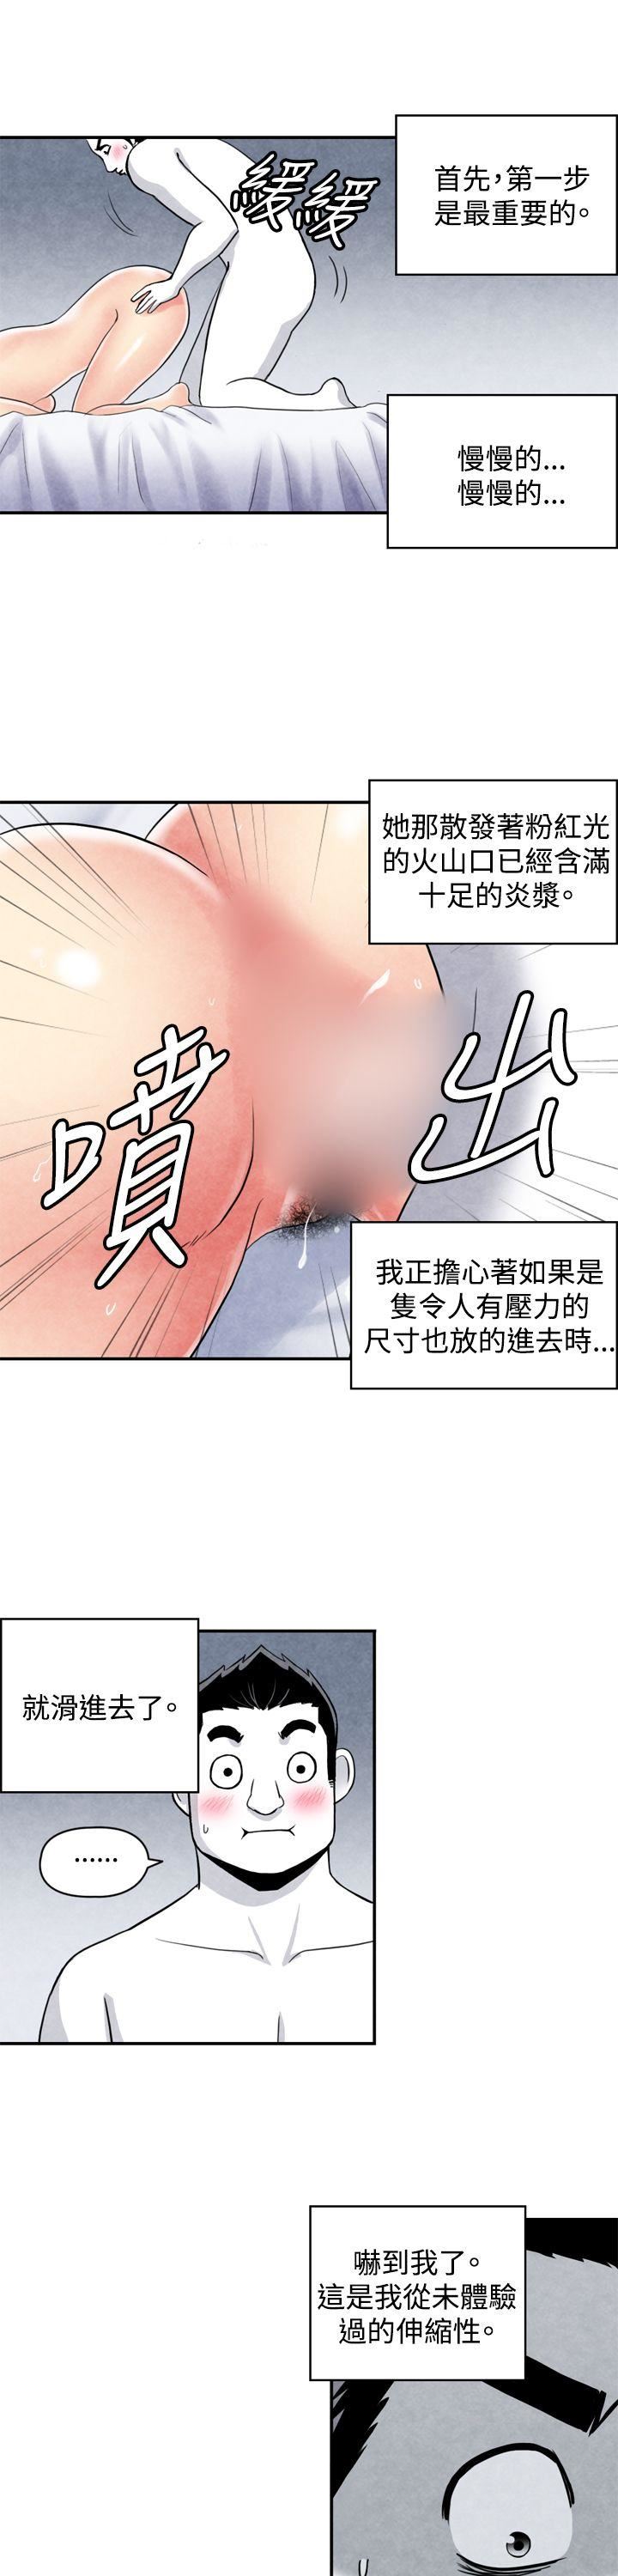 韩国污漫画 生物學的女性攻略法 CASE04-2.有夫之妇 3